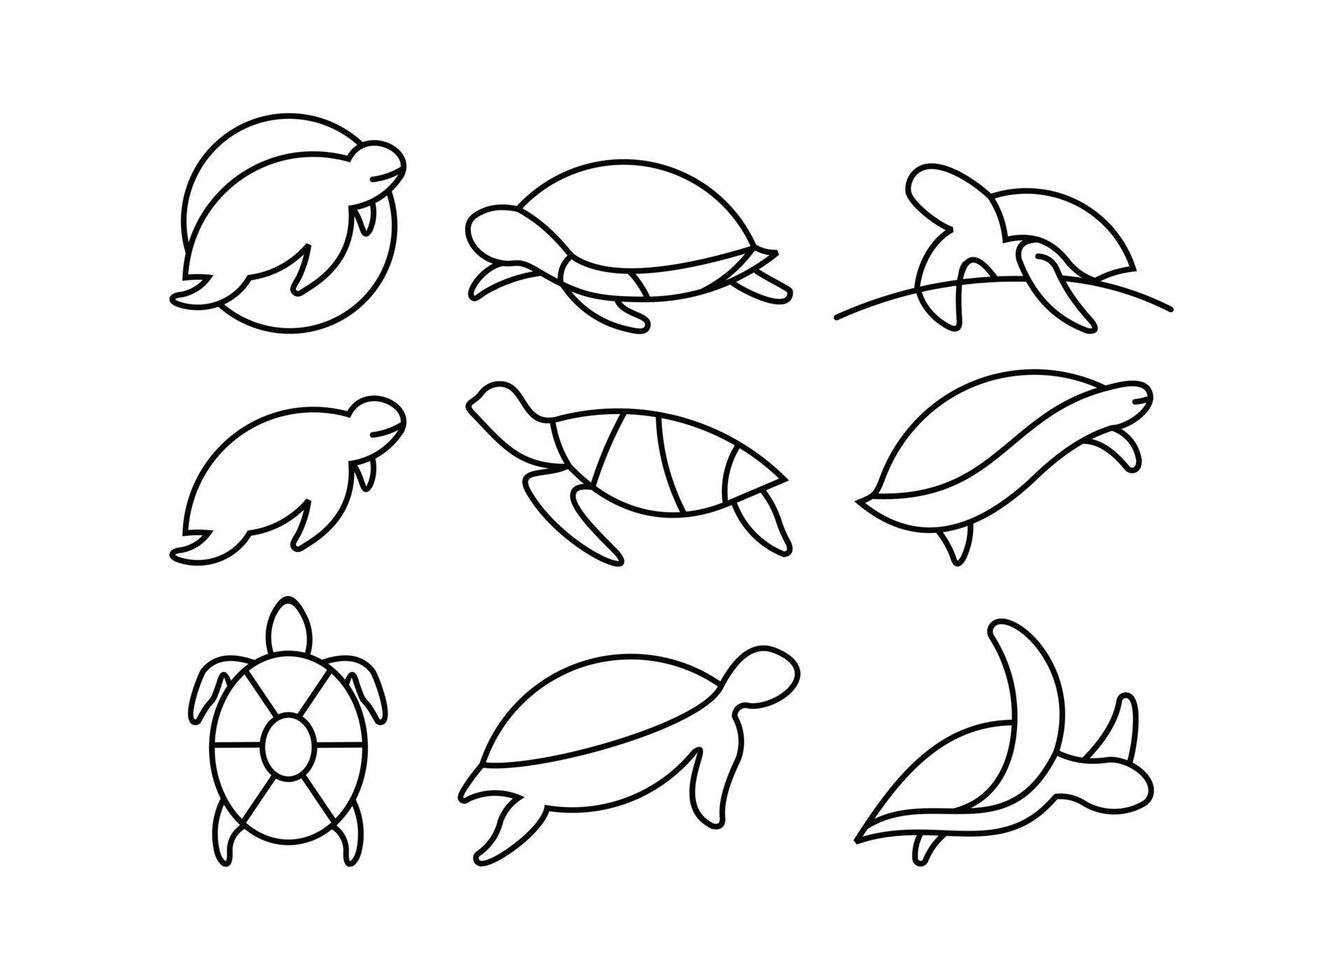 conjunto de ícones de tartaruga em ilustração vetorial de estilo diferente, conjunto de ícones de vetor de tartaruga projetado